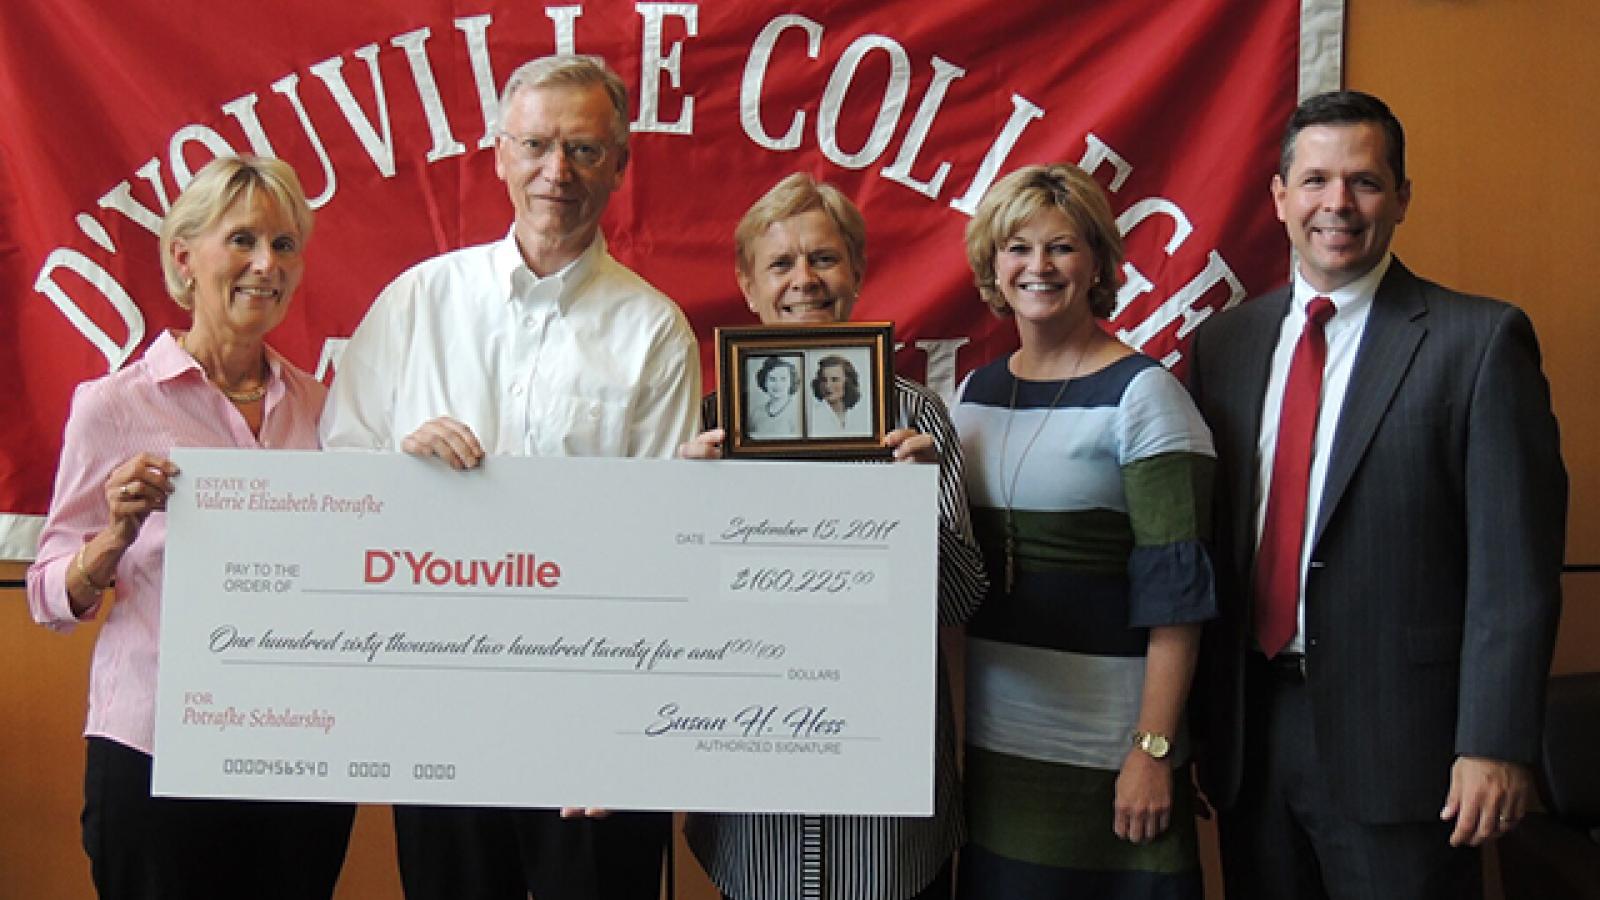 DâYouville Receives over $160,000 for Scholarships for Students in the Sciences